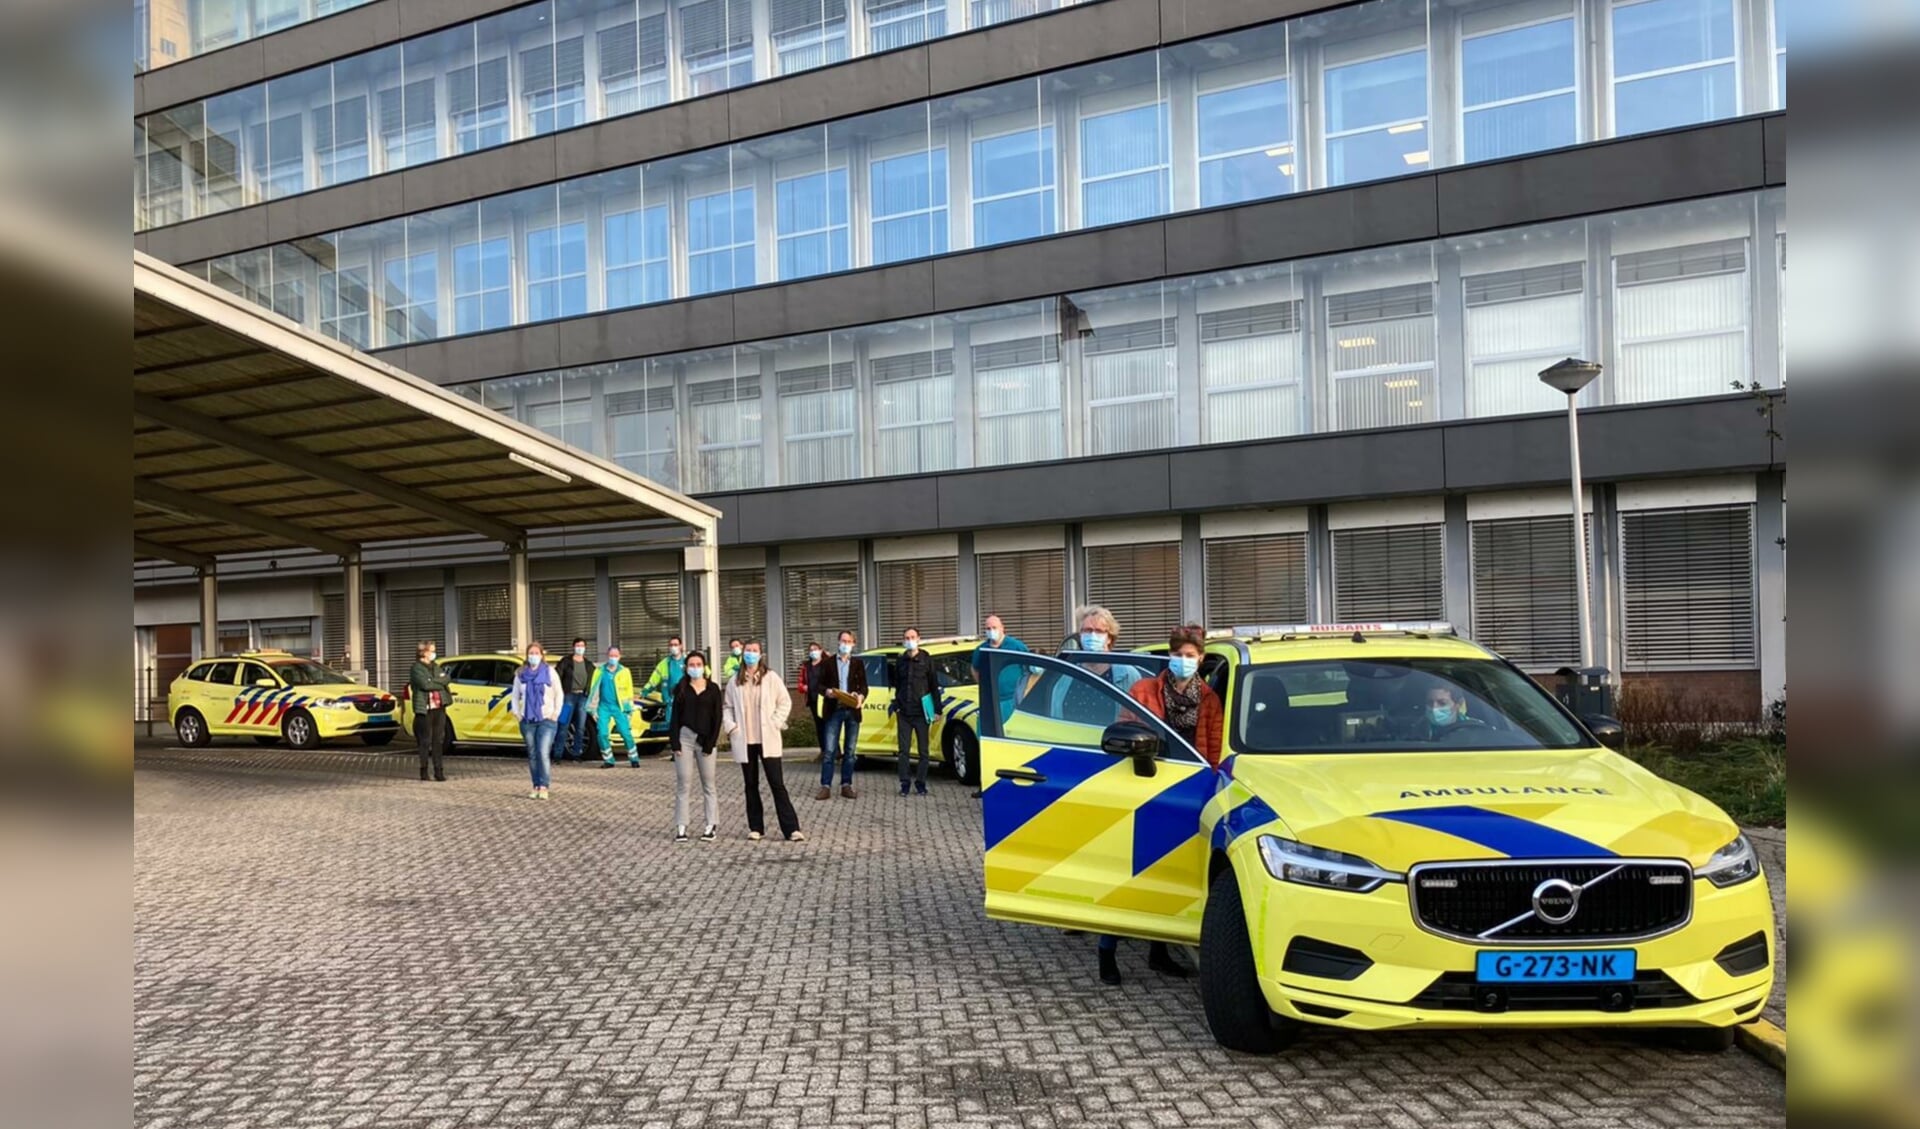 Eind februari trokken prikteams vanuit de coronaspoedpost bij het Alrijne Ziekenhuis Leiderdorp de regio in om kwetsbare mensen in instellingen te vaccineren. 